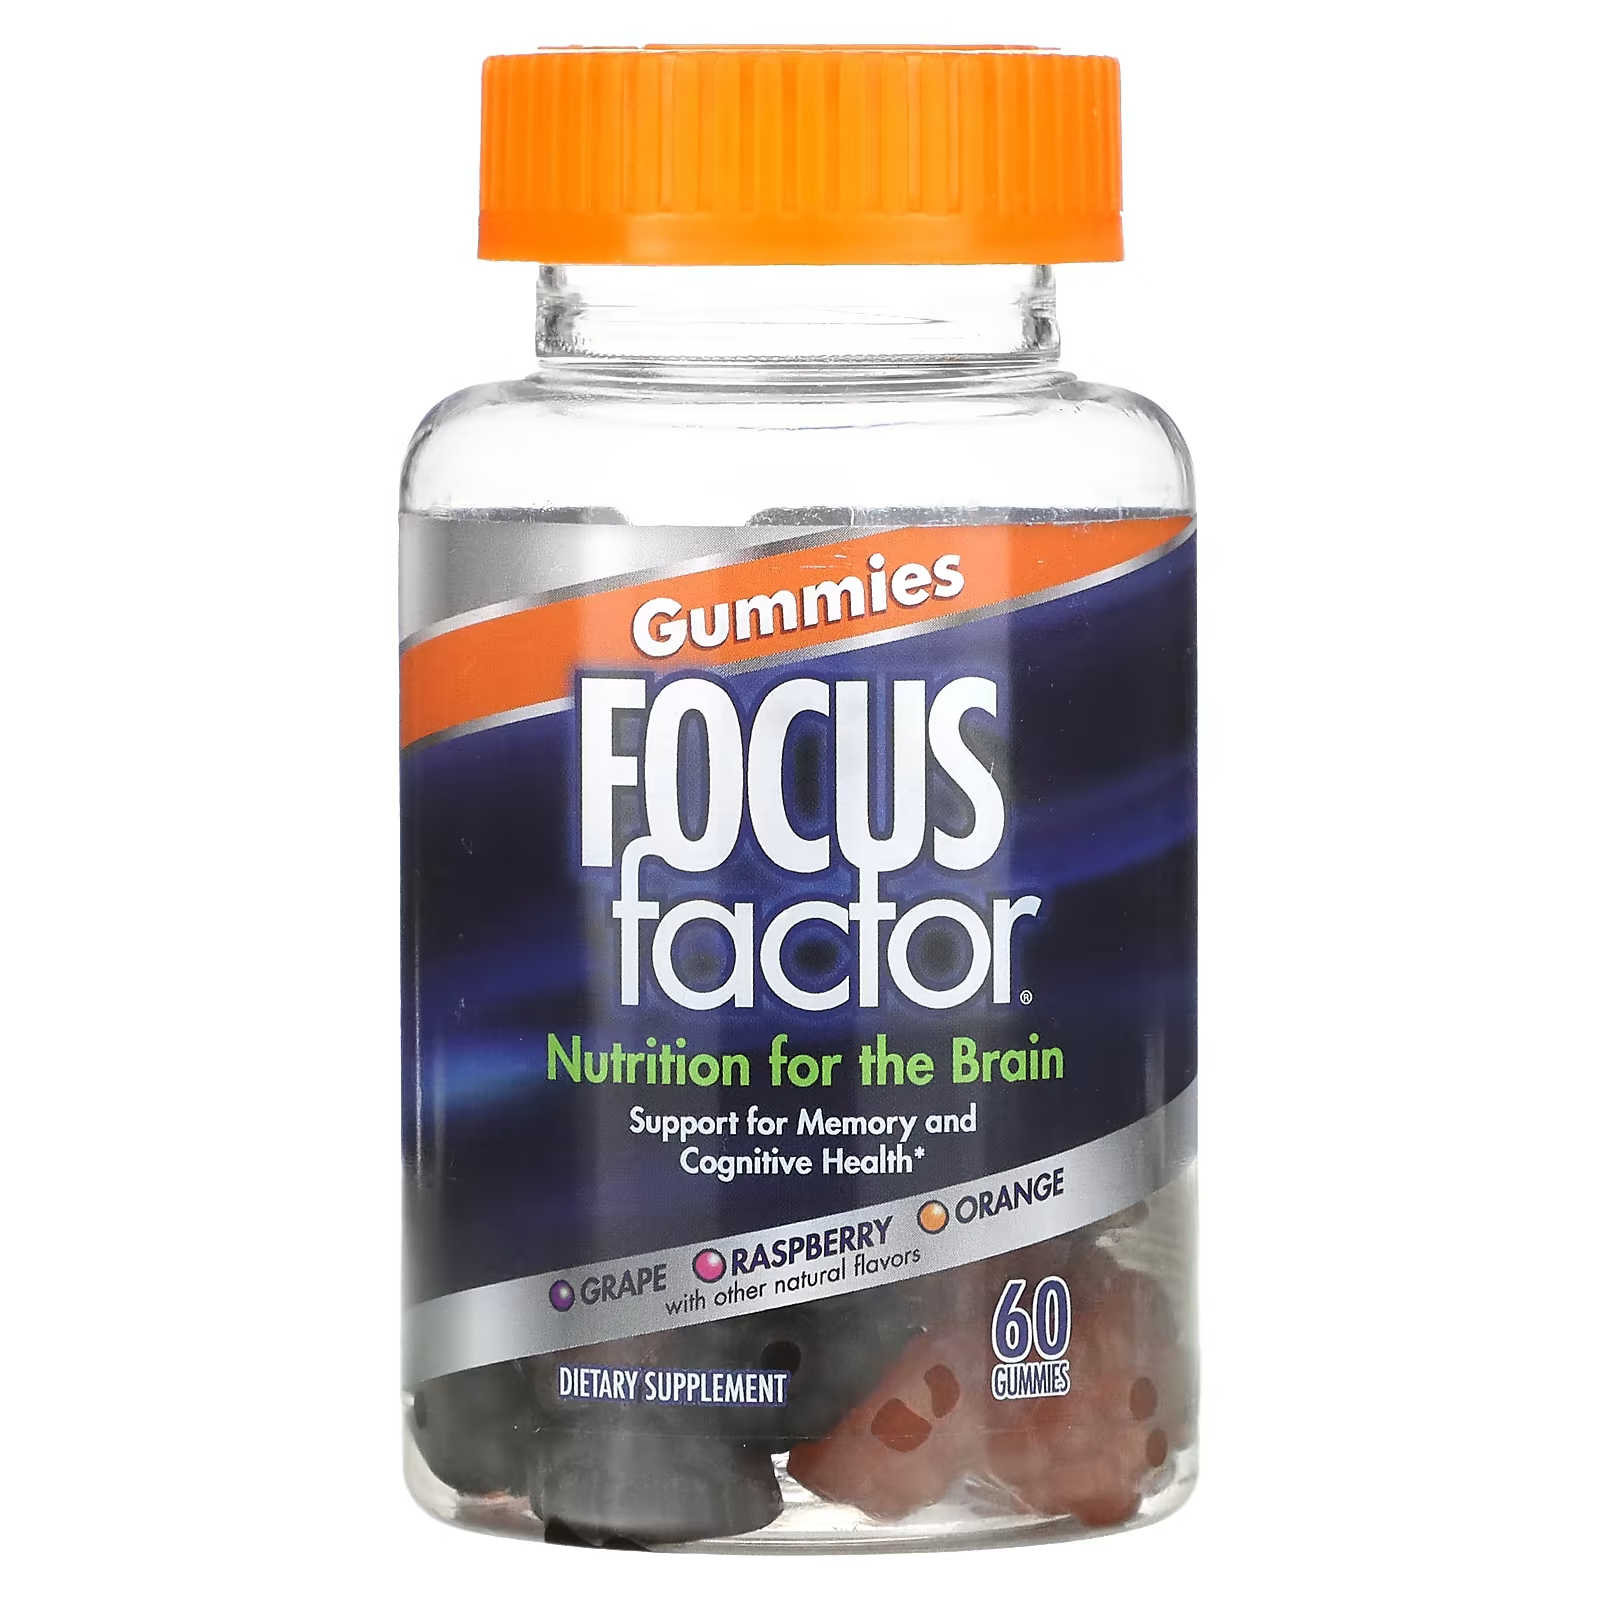 Пищевая добавка Focus Factor Nutrition For The Brain виноград, малина, апельсин, 60 жевательных таблеток